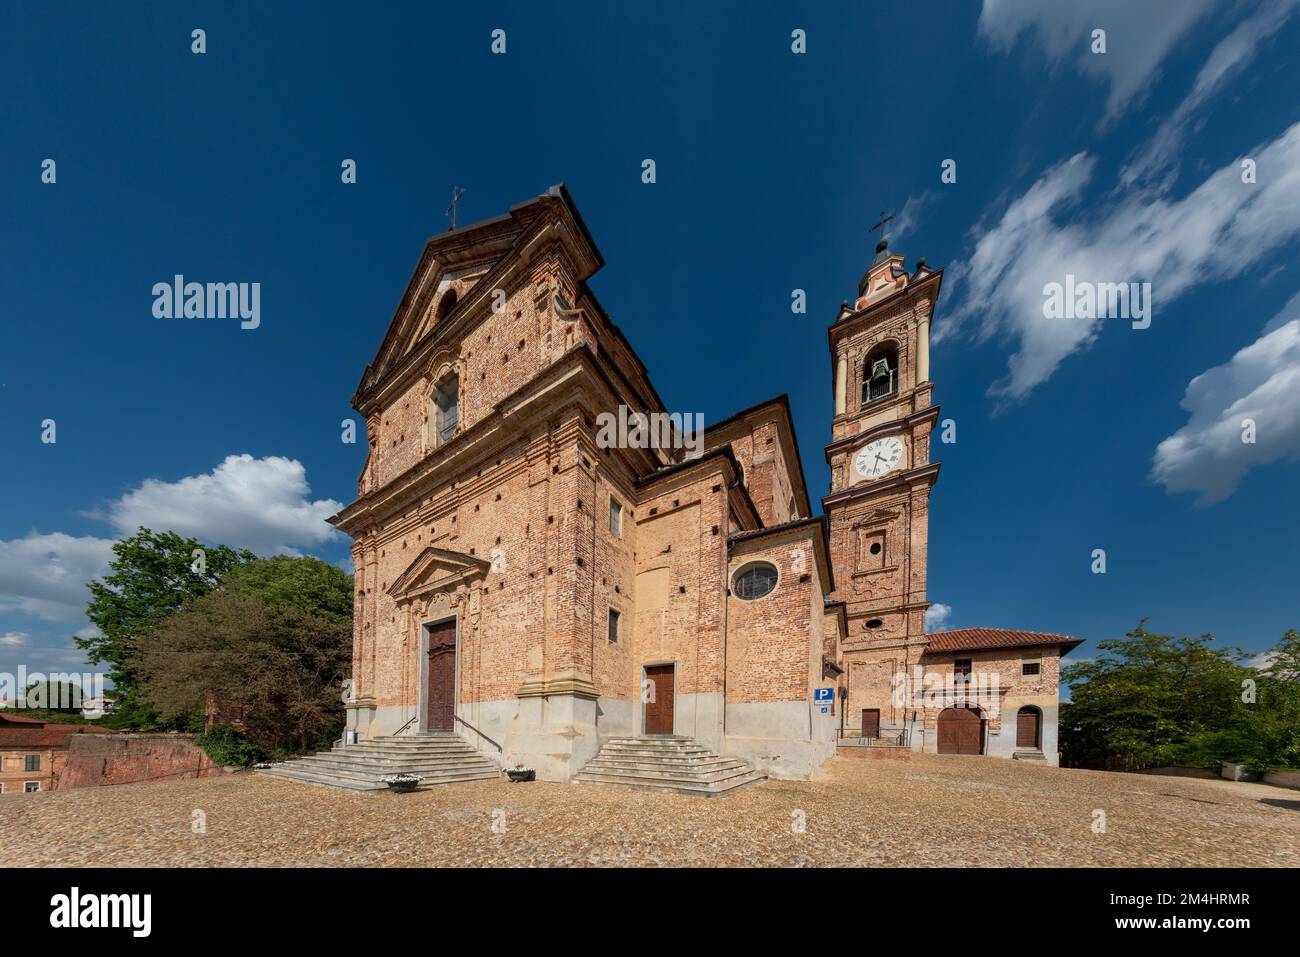 Sommariva del Bosco, Cuneo, Italien - 01. Mai 2022: Pfarrkirche Santi Giacomo e Filippo (18.. Jahrhundert) mit Glockenturm und Uhr Stockfoto